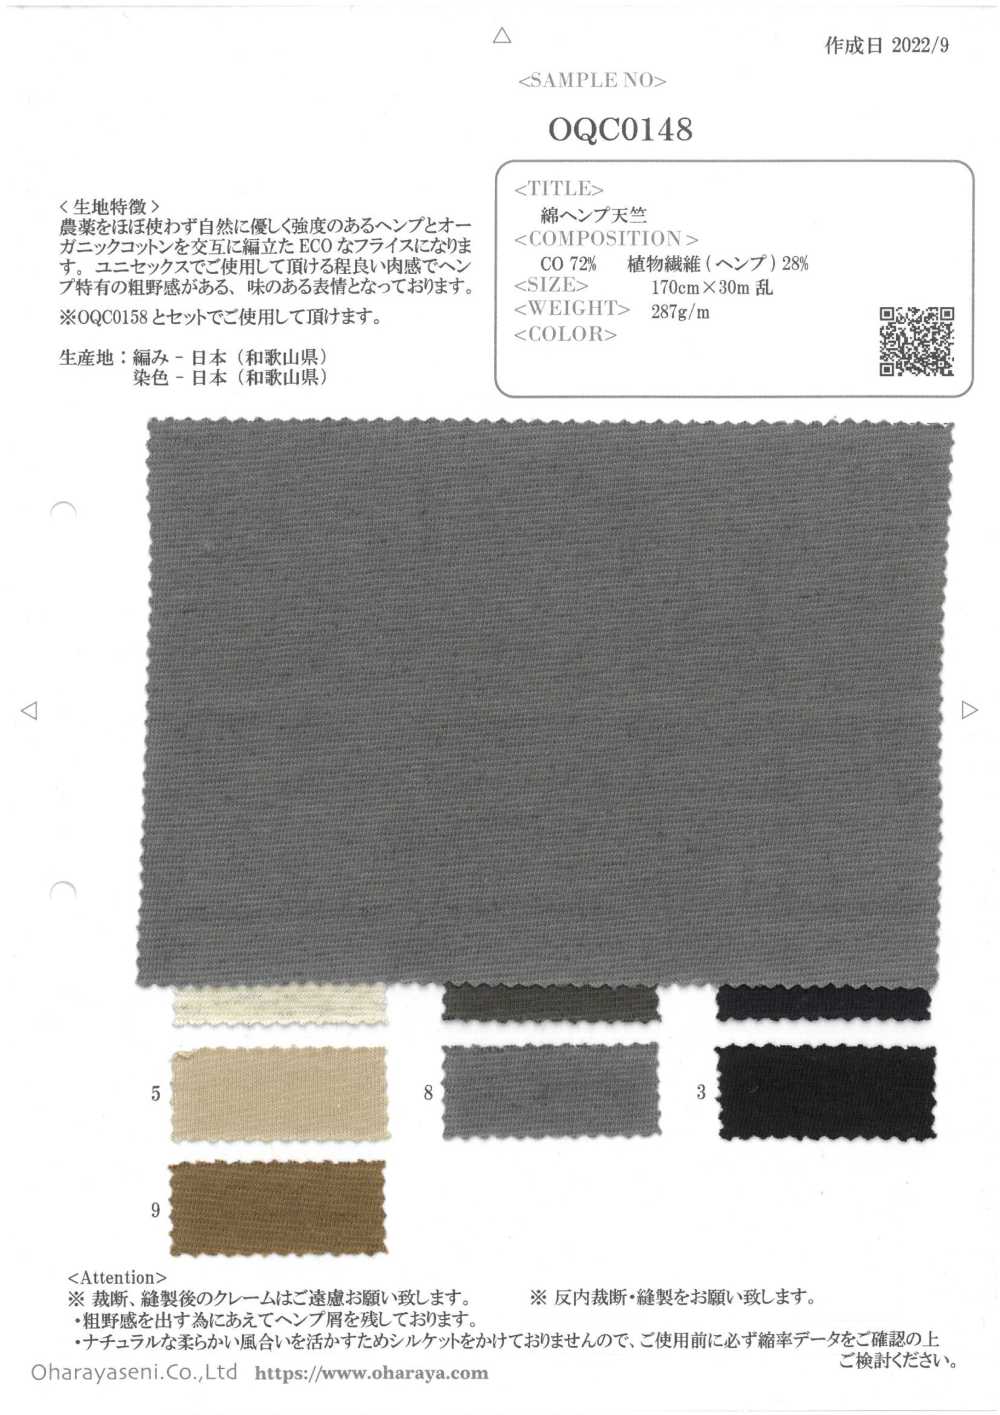 OQC0148 Jersey Di Canapa Di Cotone[Tessile / Tessuto] Oharayaseni